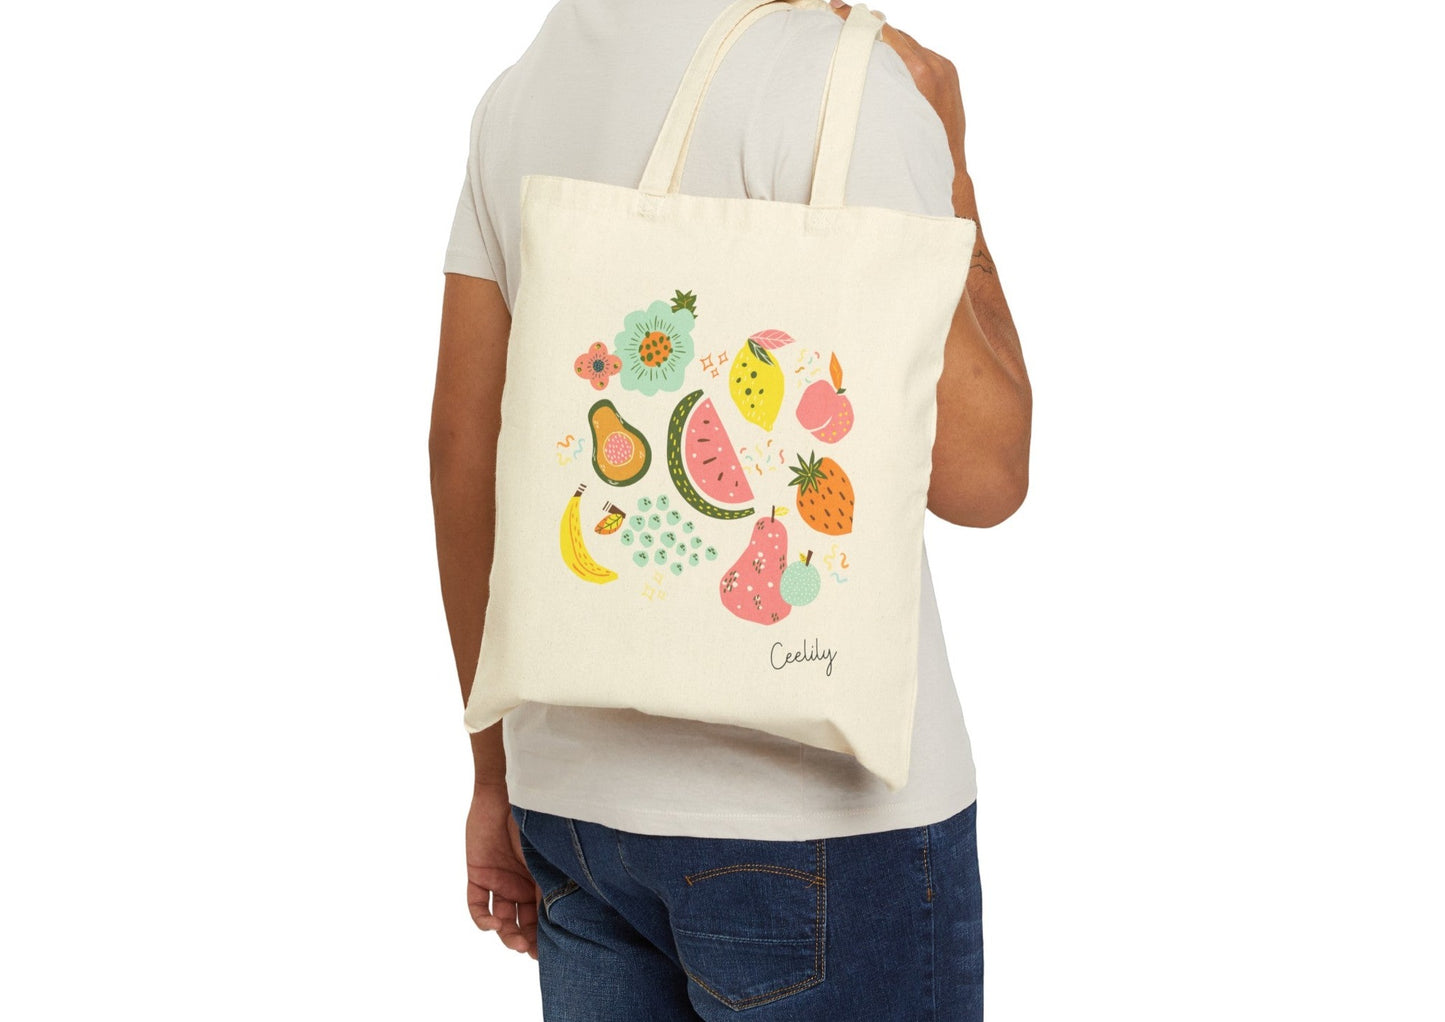 Fruit Tote Bag